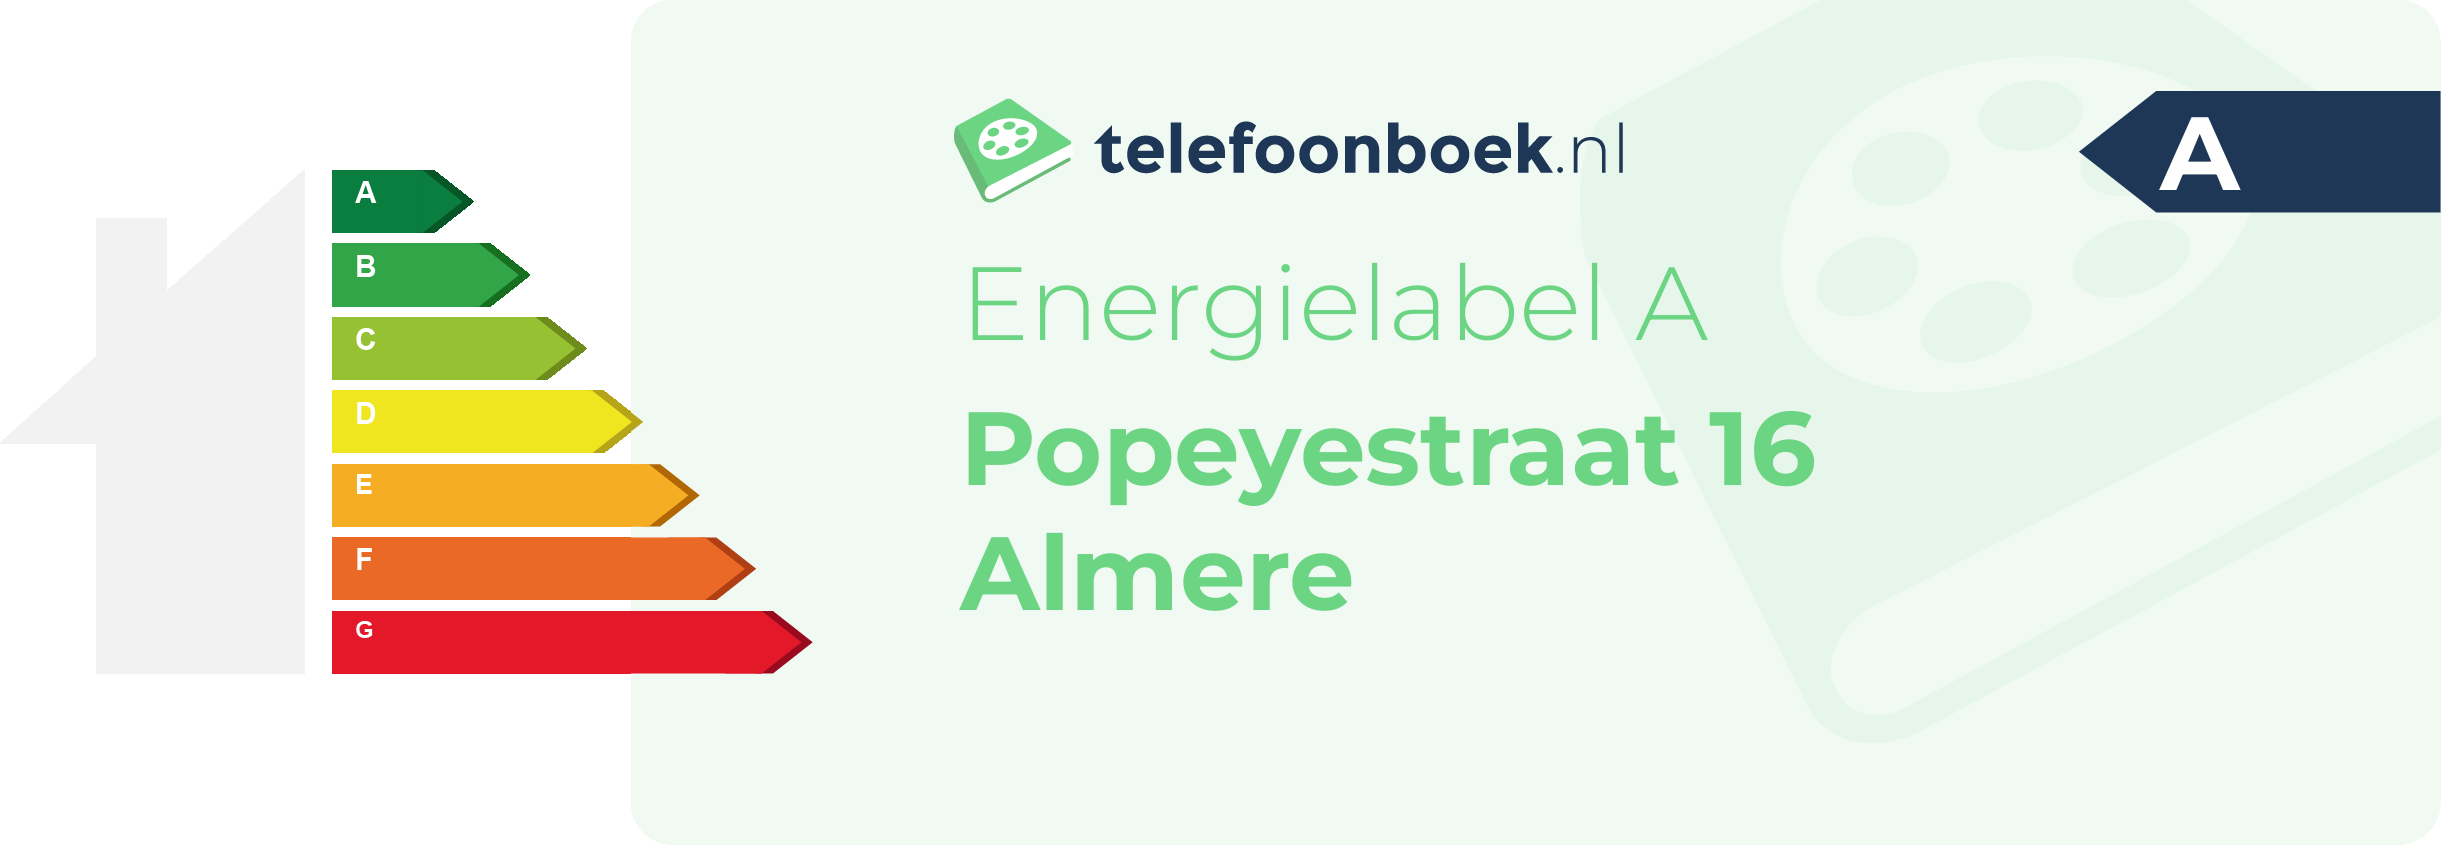 Energielabel Popeyestraat 16 Almere